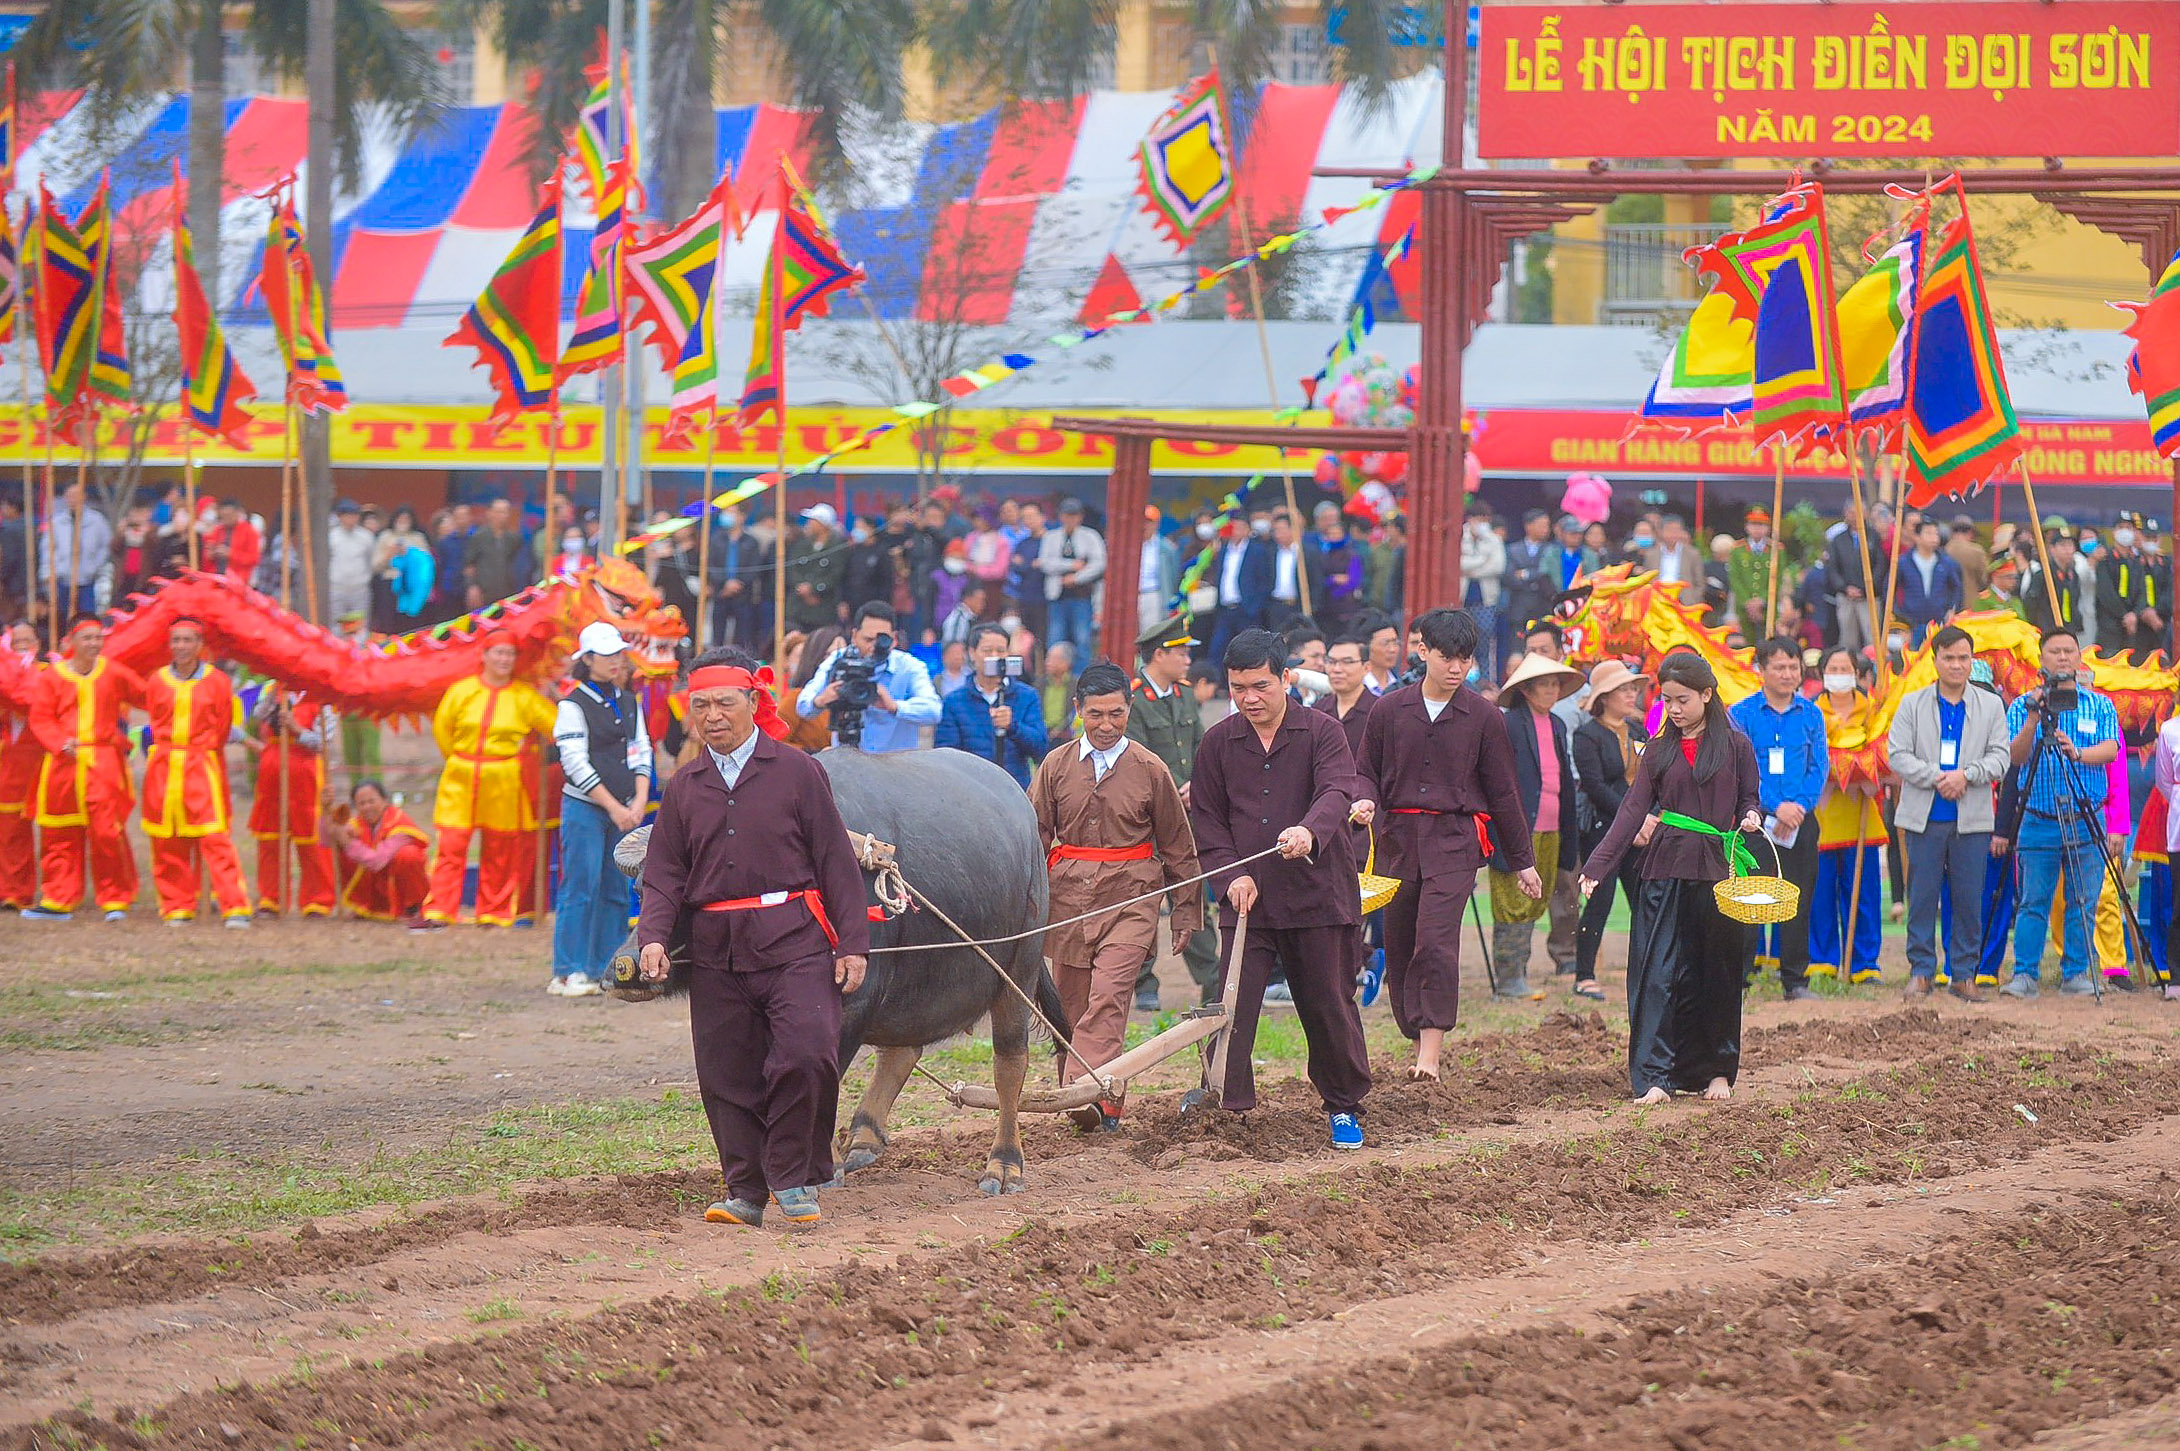 Người dân hân hoan ngày khai hội Tịch Điền Đọi Sơn Xuân Giáp Thìn- Ảnh 8.